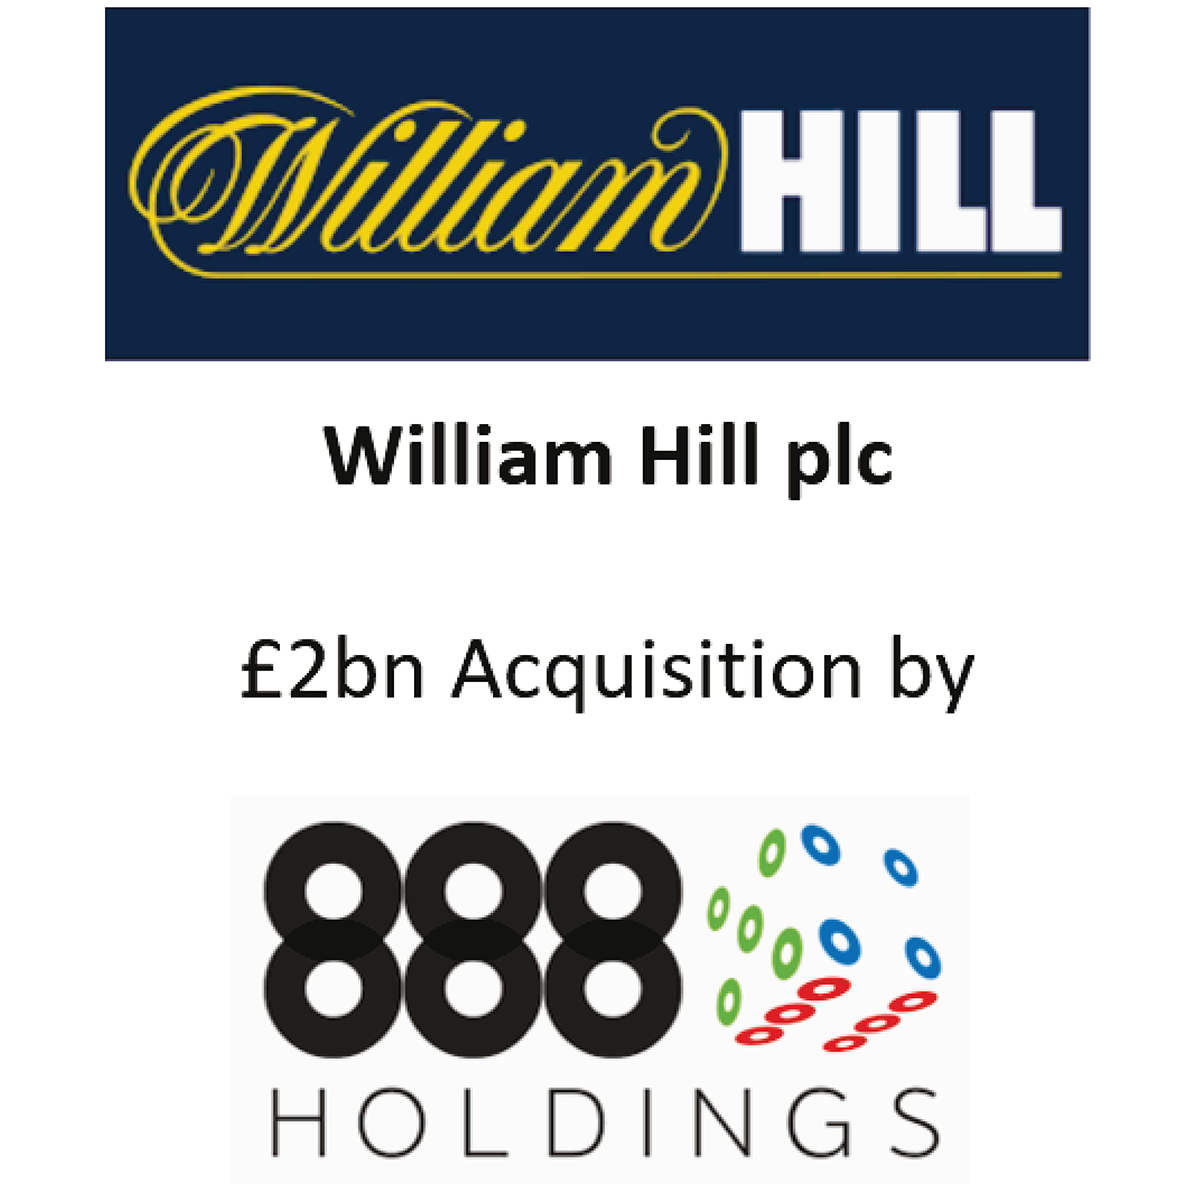 William Hill 888 Hldgs